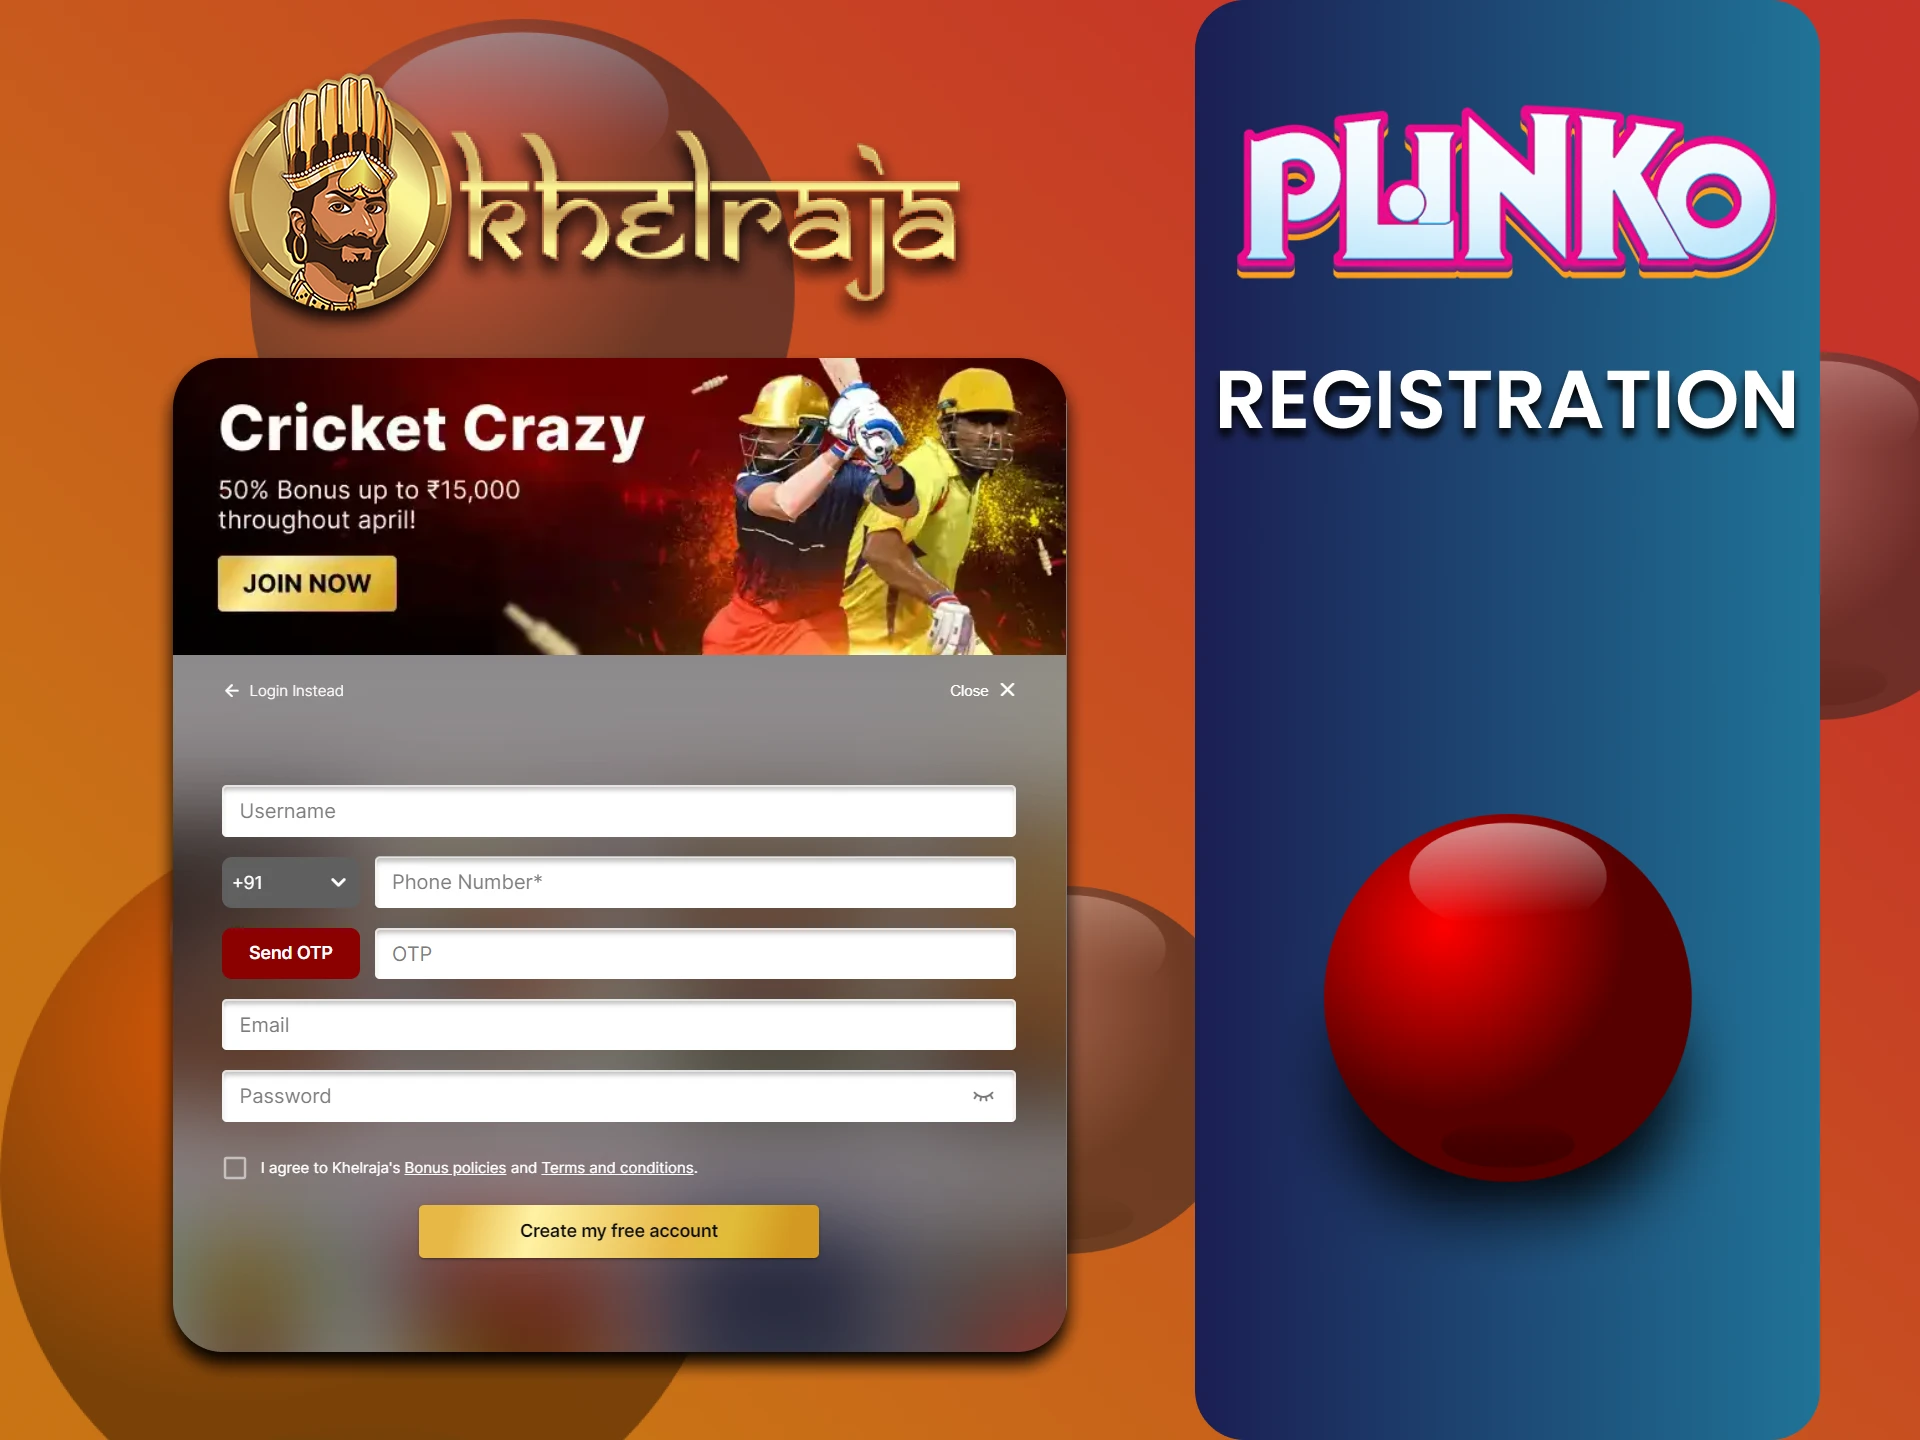 We will cover registration for Plinko from Khelraja.